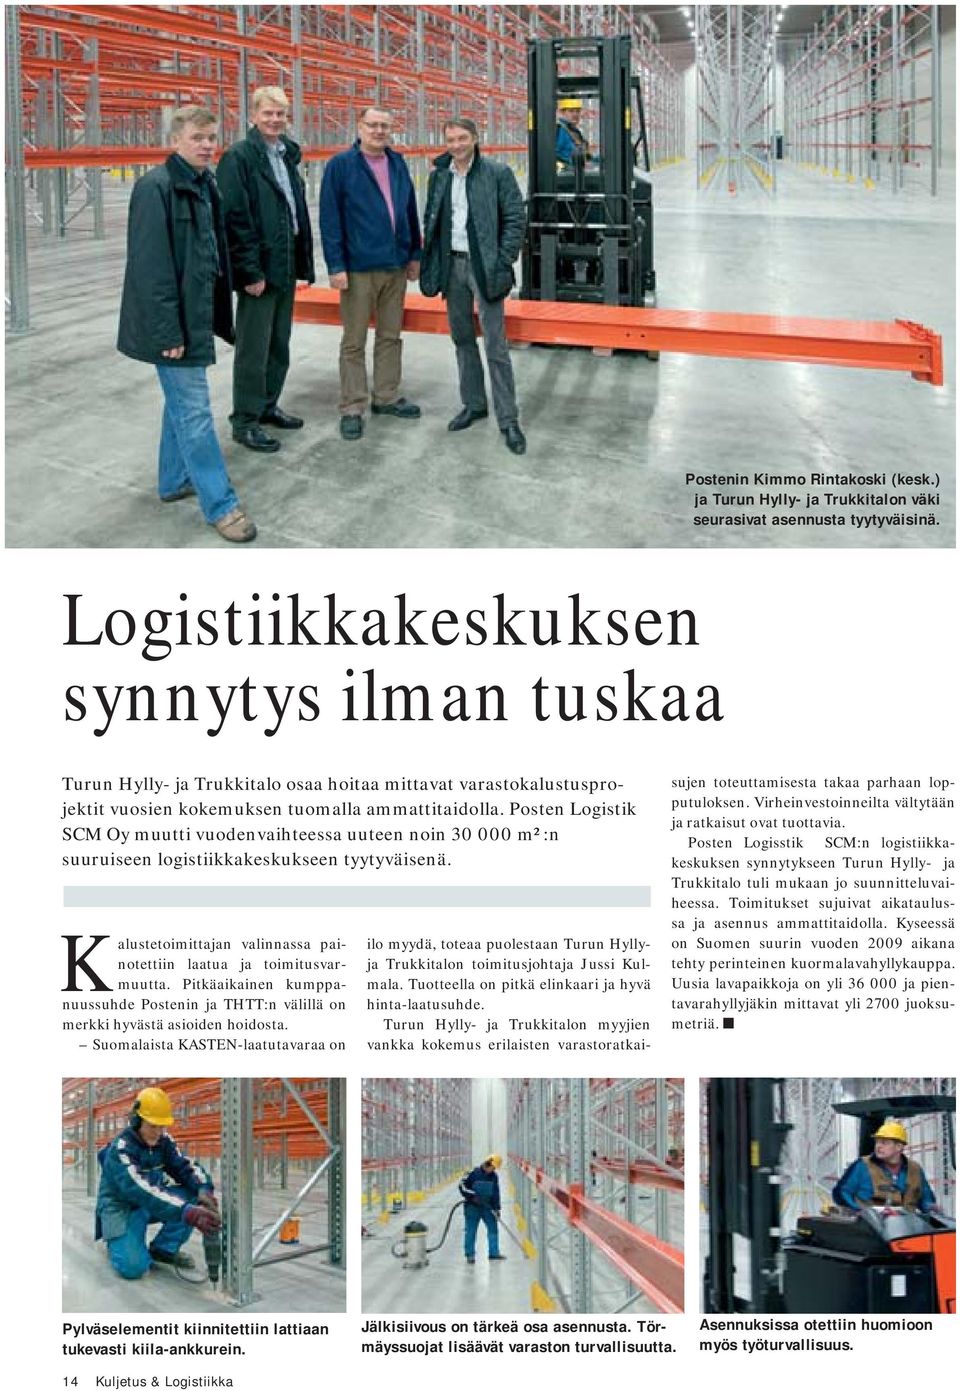 Posten Logistik SCM Oy muutti vuodenvaihteessa uuteen noin 30 000 m²:n suuruiseen logistiikkakeskukseen tyytyväisenä. Kalustetoimittajan valinnassa painotettiin laatua ja toimitusvarmuutta.